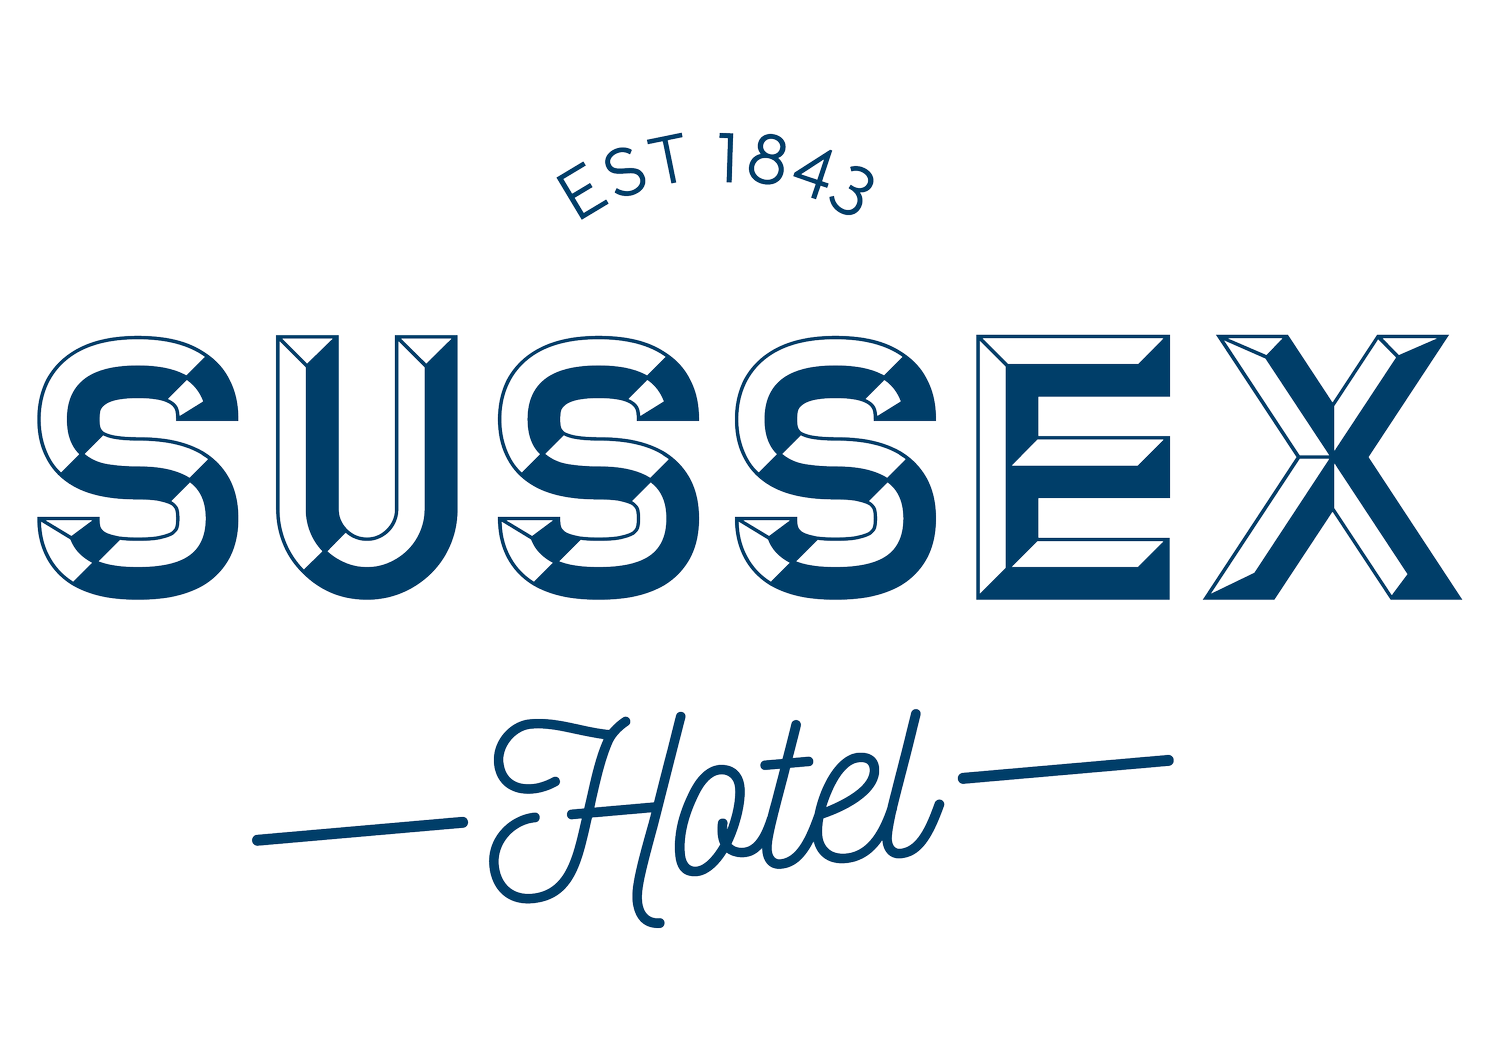 Sussex Hotel